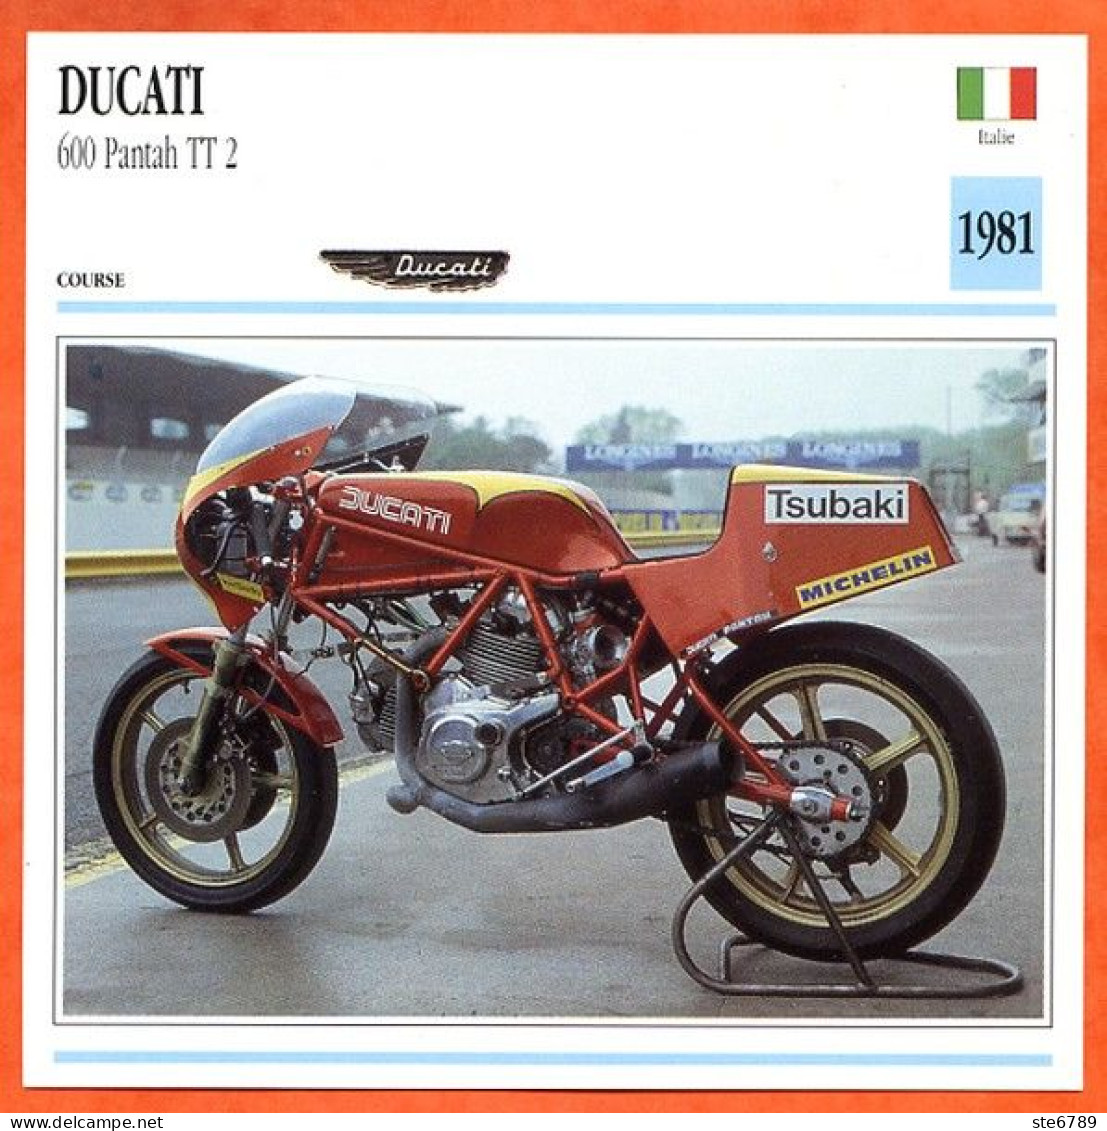 DUCATI 600 Pantah TT2 1981 Italie Fiche Technique Moto - Sport